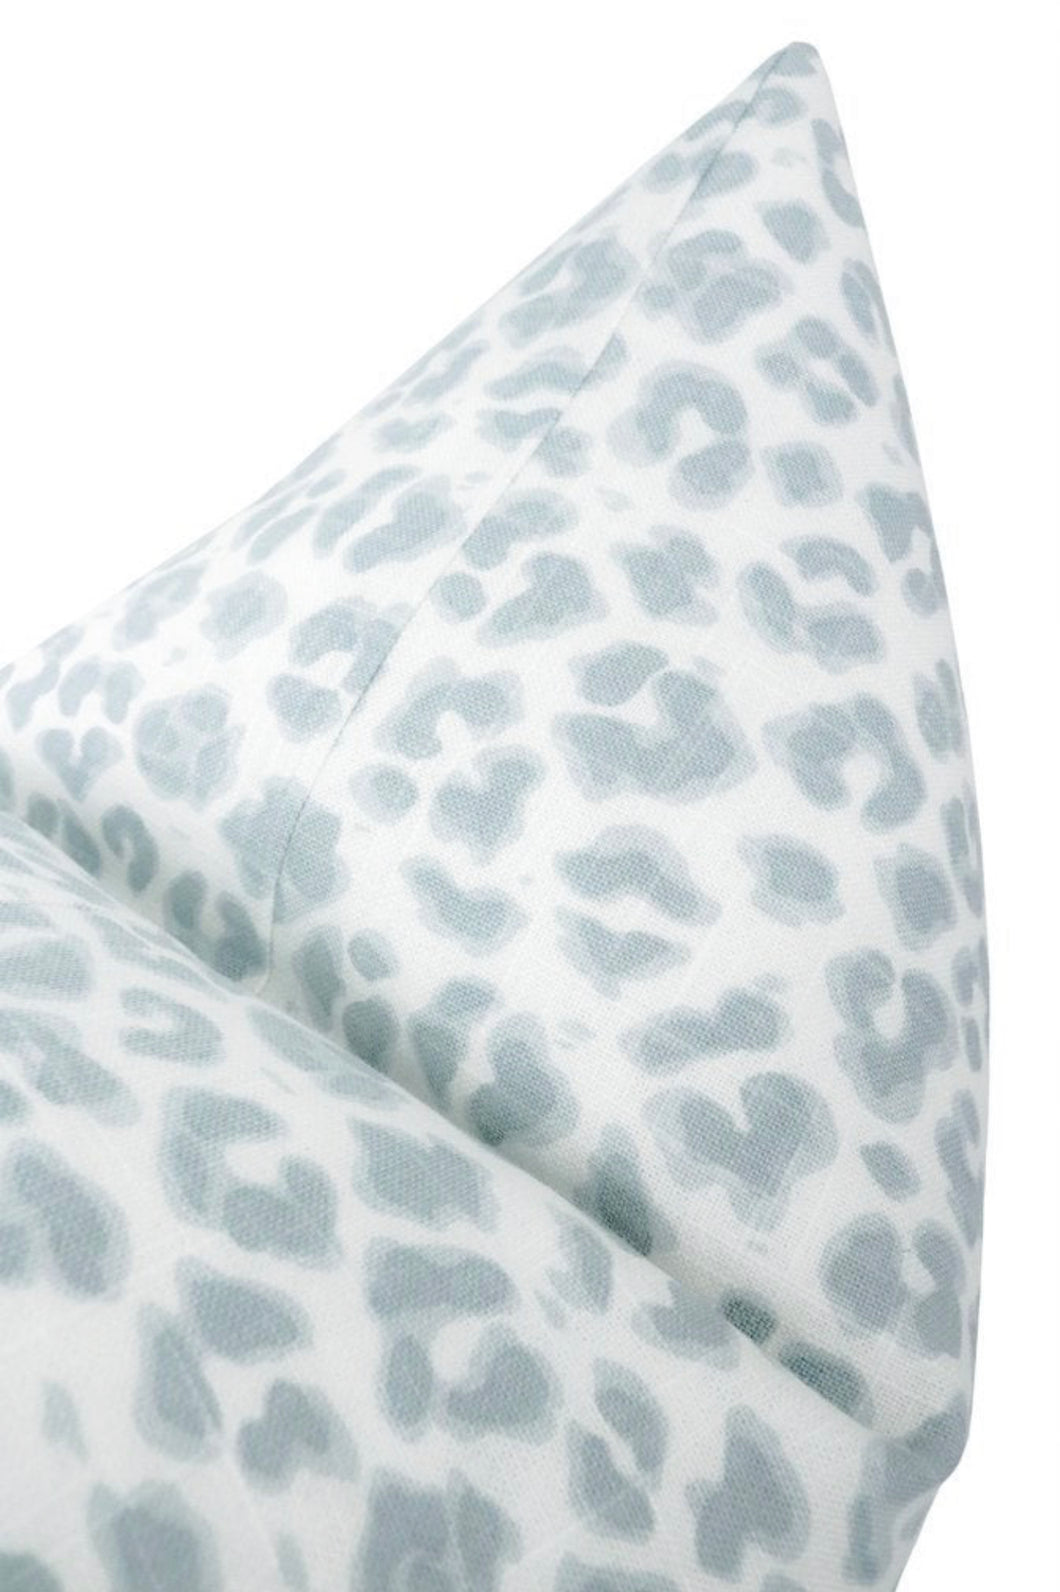 Cougar Linen Mist Pillow-12x18